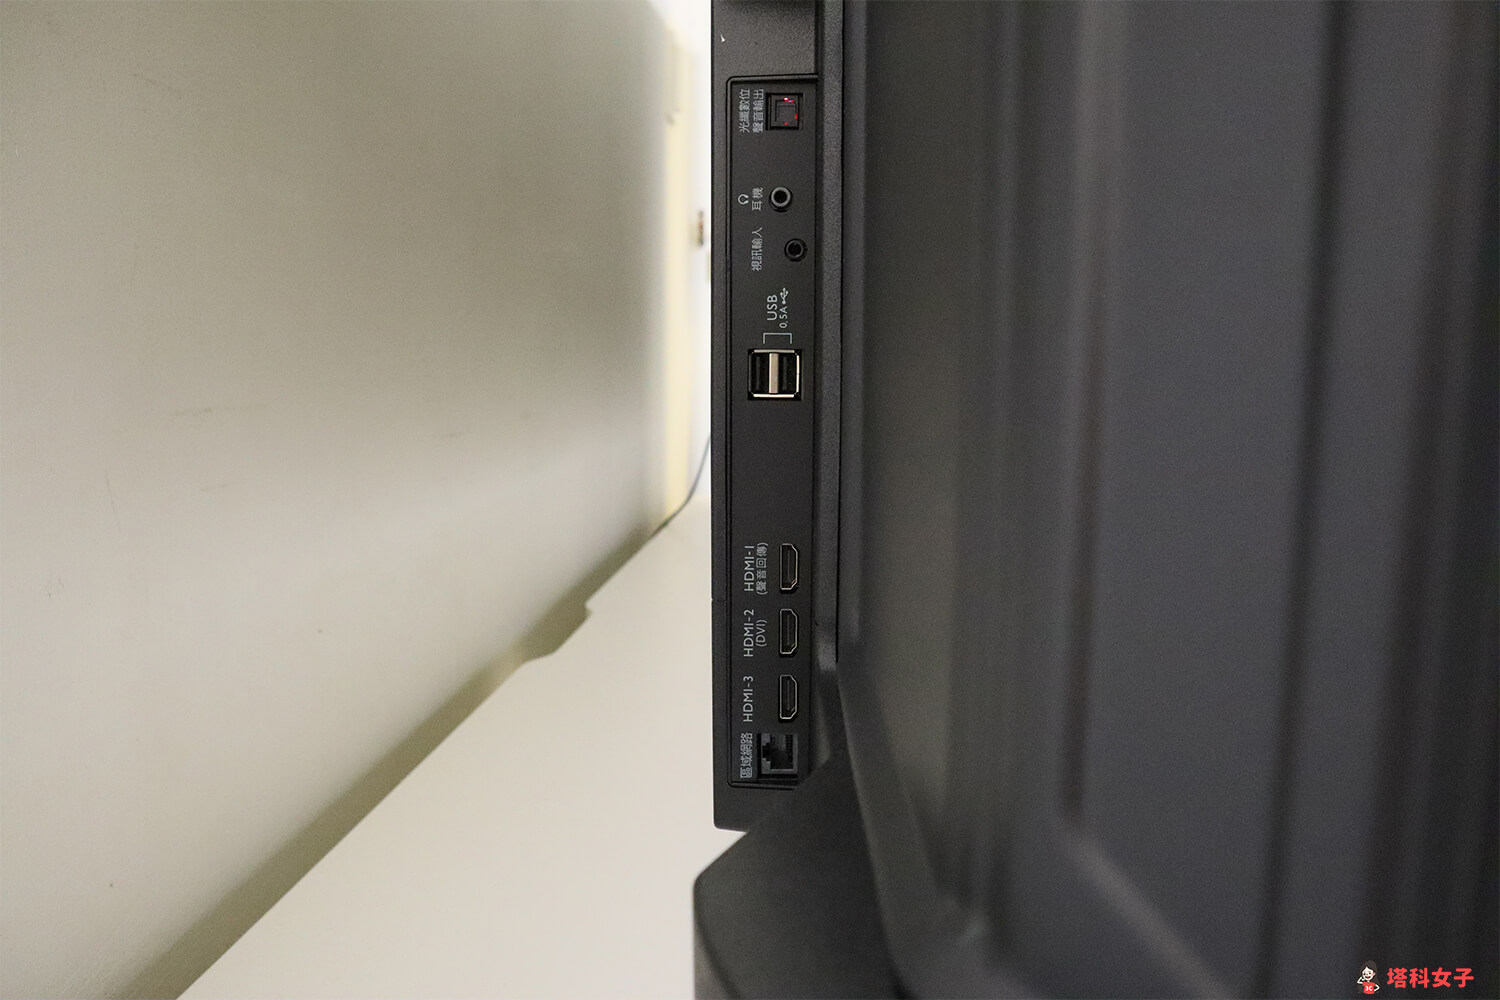 BENQ 4K HDR 液晶電視 E 系列：背部左側的 HDMI 插孔